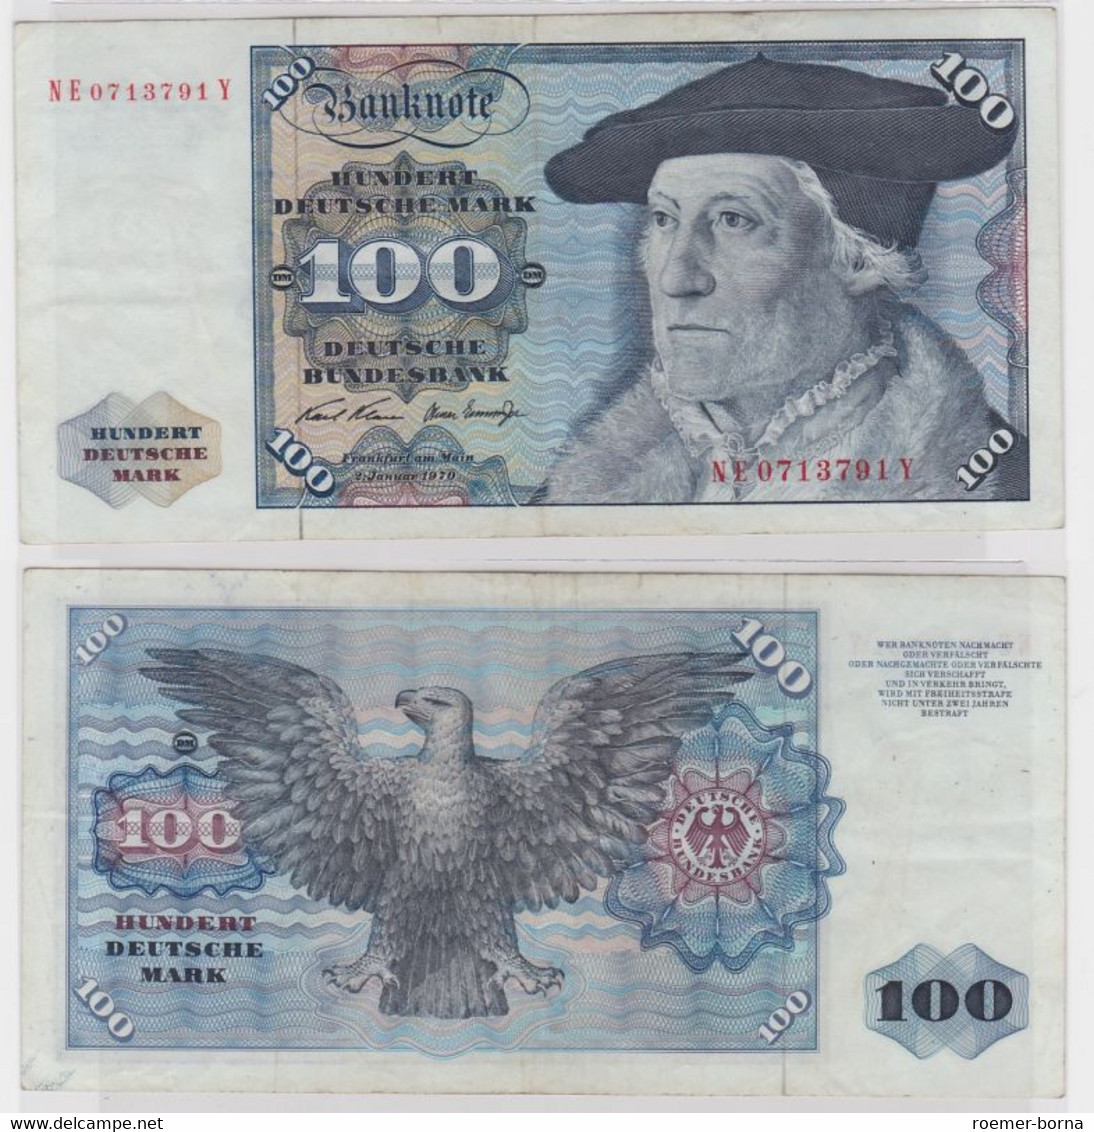 T146435 Banknote 100 DM Deutsche Mark Ro. 273b Schein 2.Jan 1970 KN NE 0713791 Y - 100 Deutsche Mark